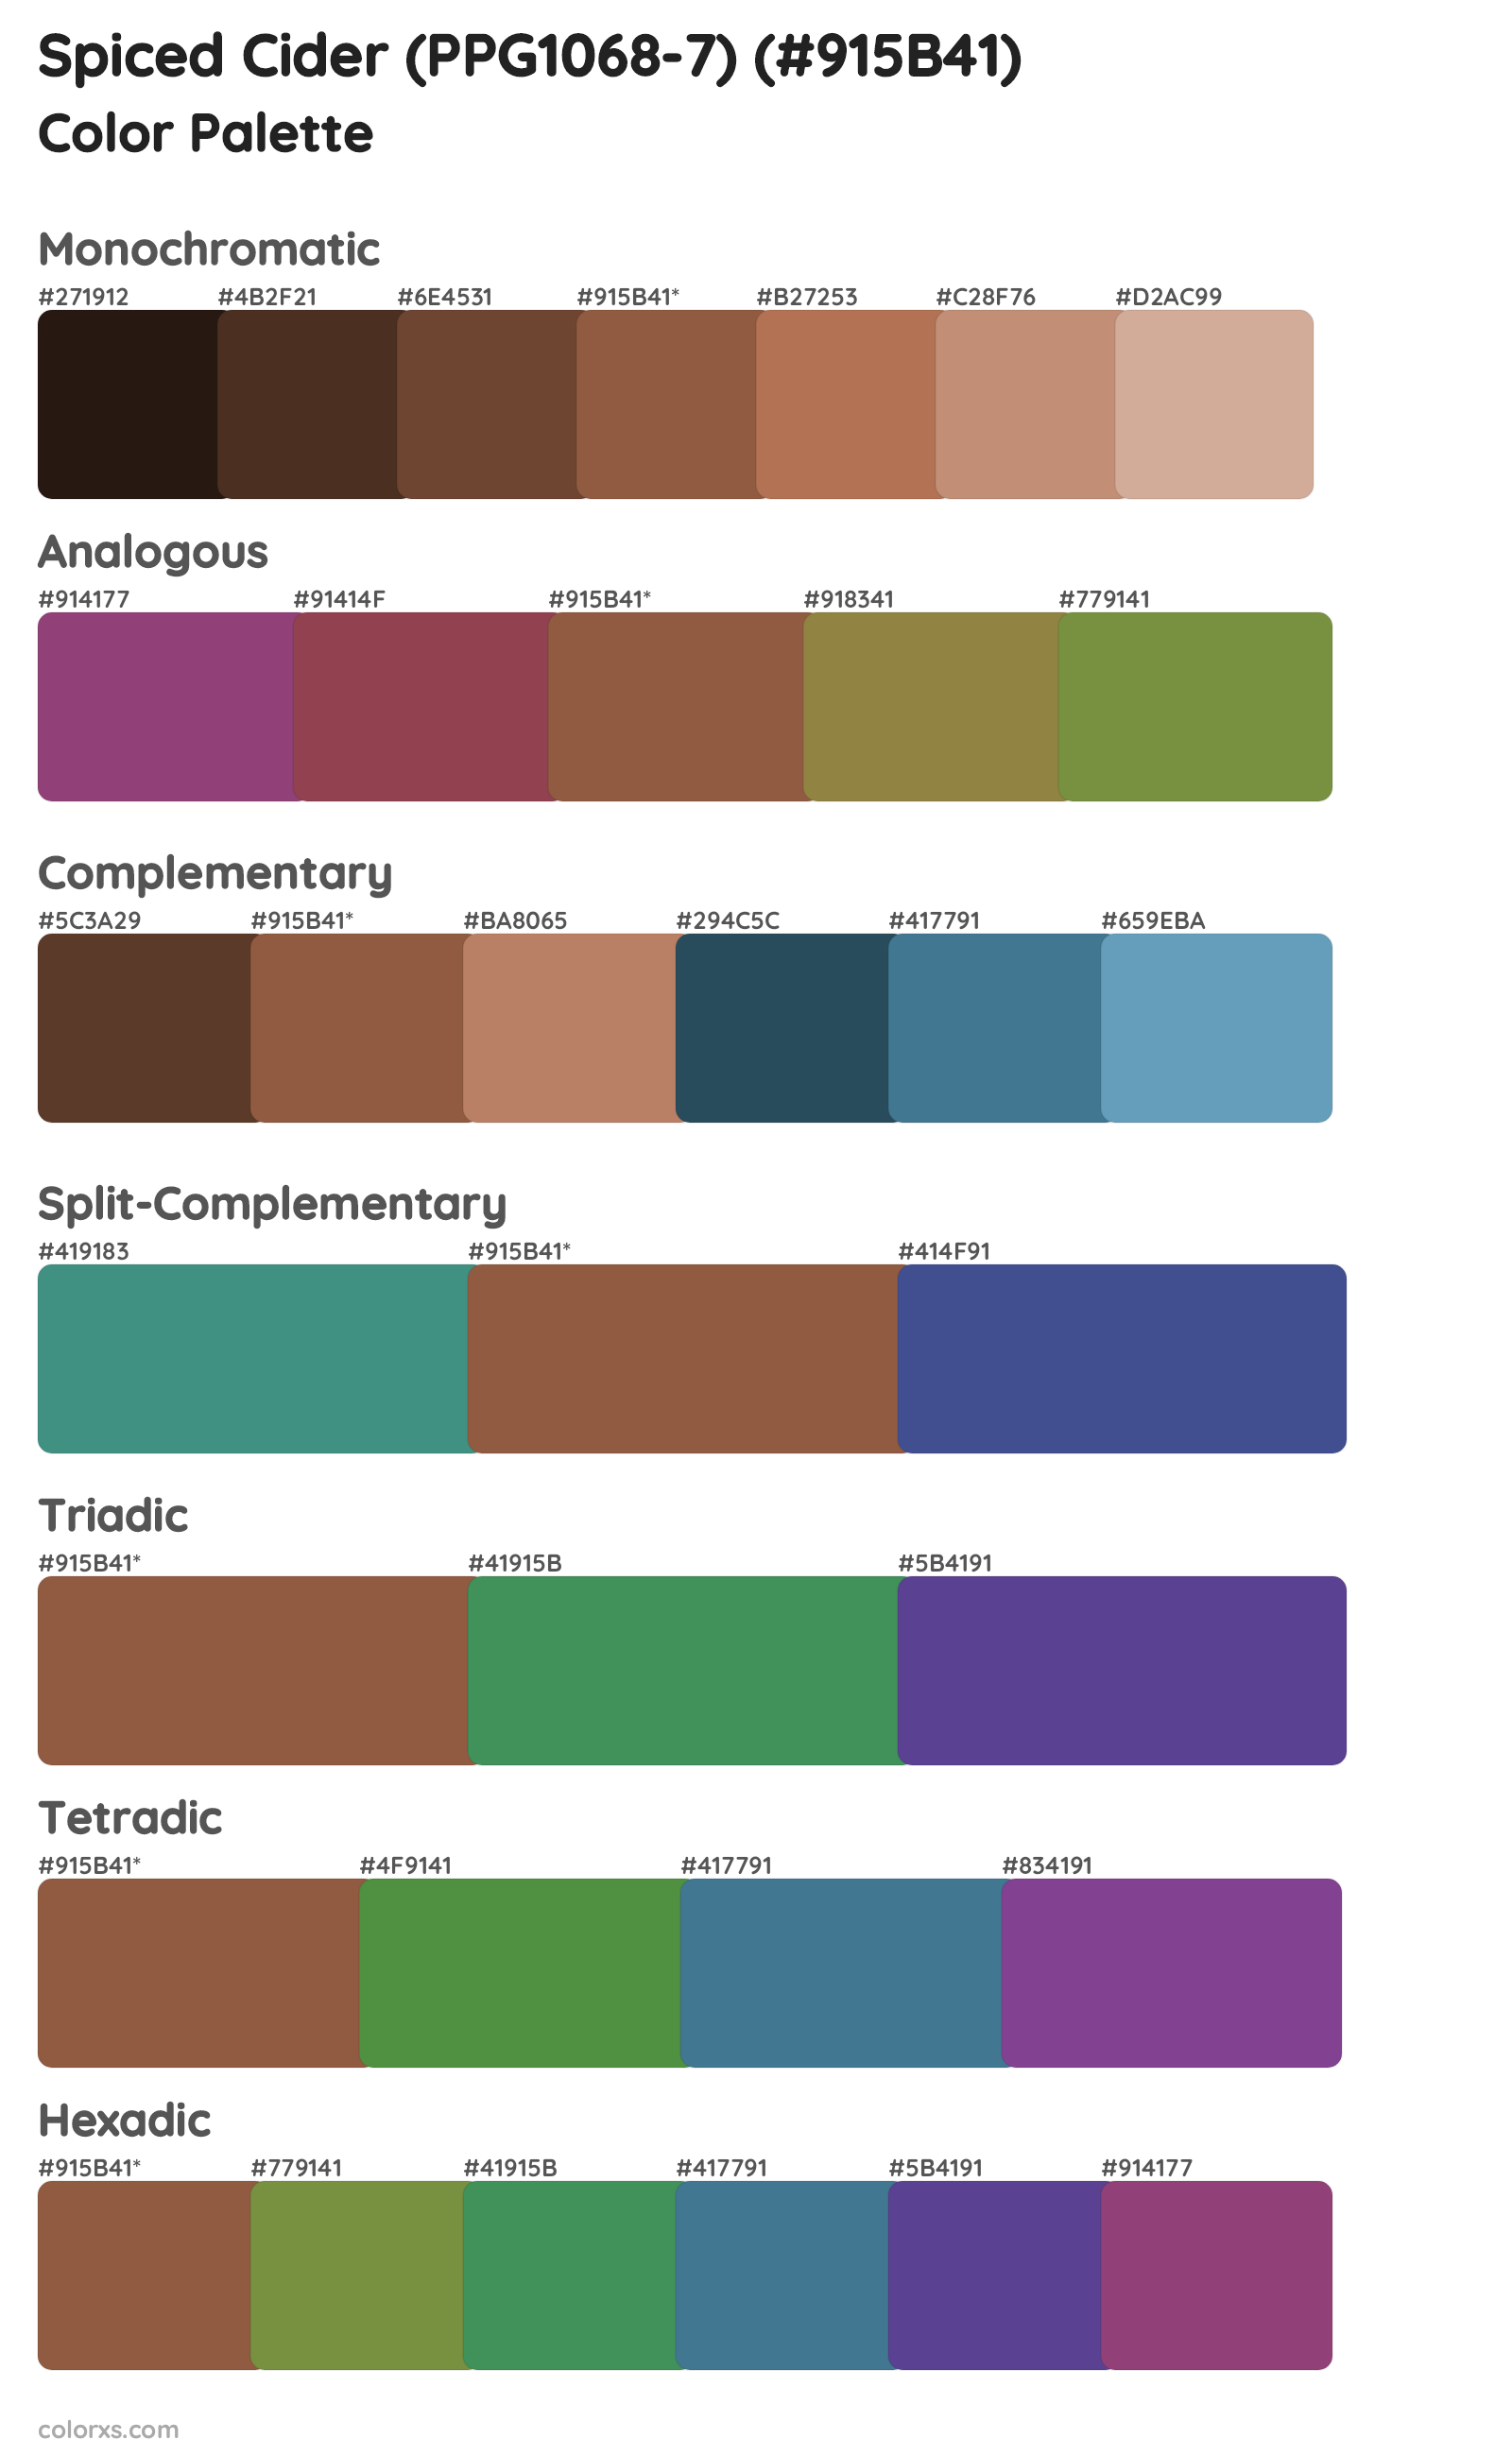 Spiced Cider (PPG1068-7) Color Scheme Palettes